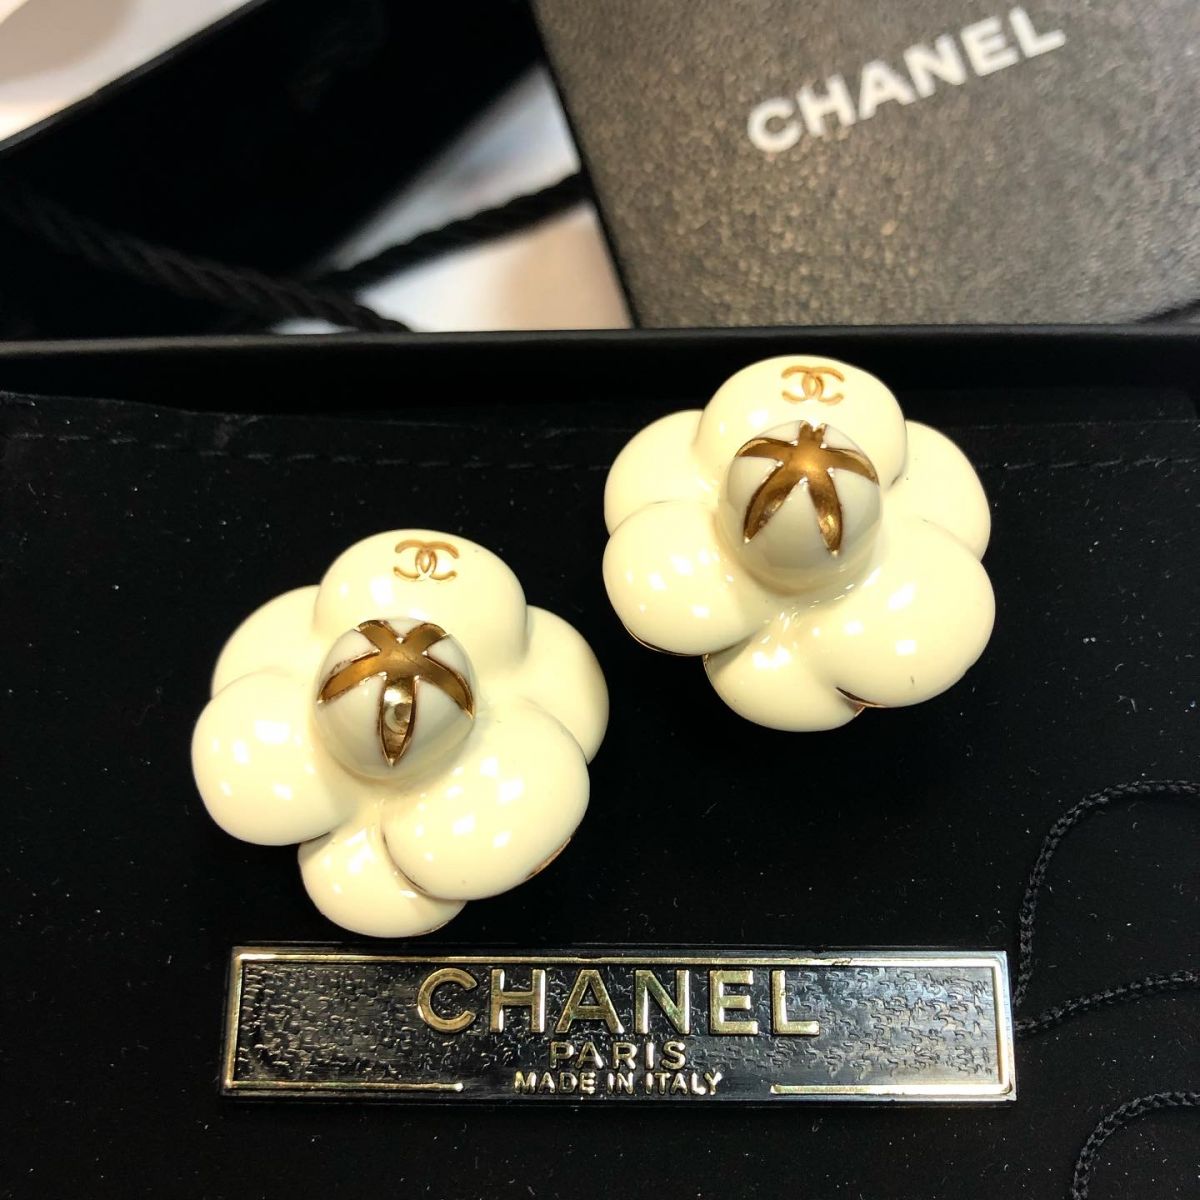 Клипсы Chanel  цена 23 078 руб /в коробке/